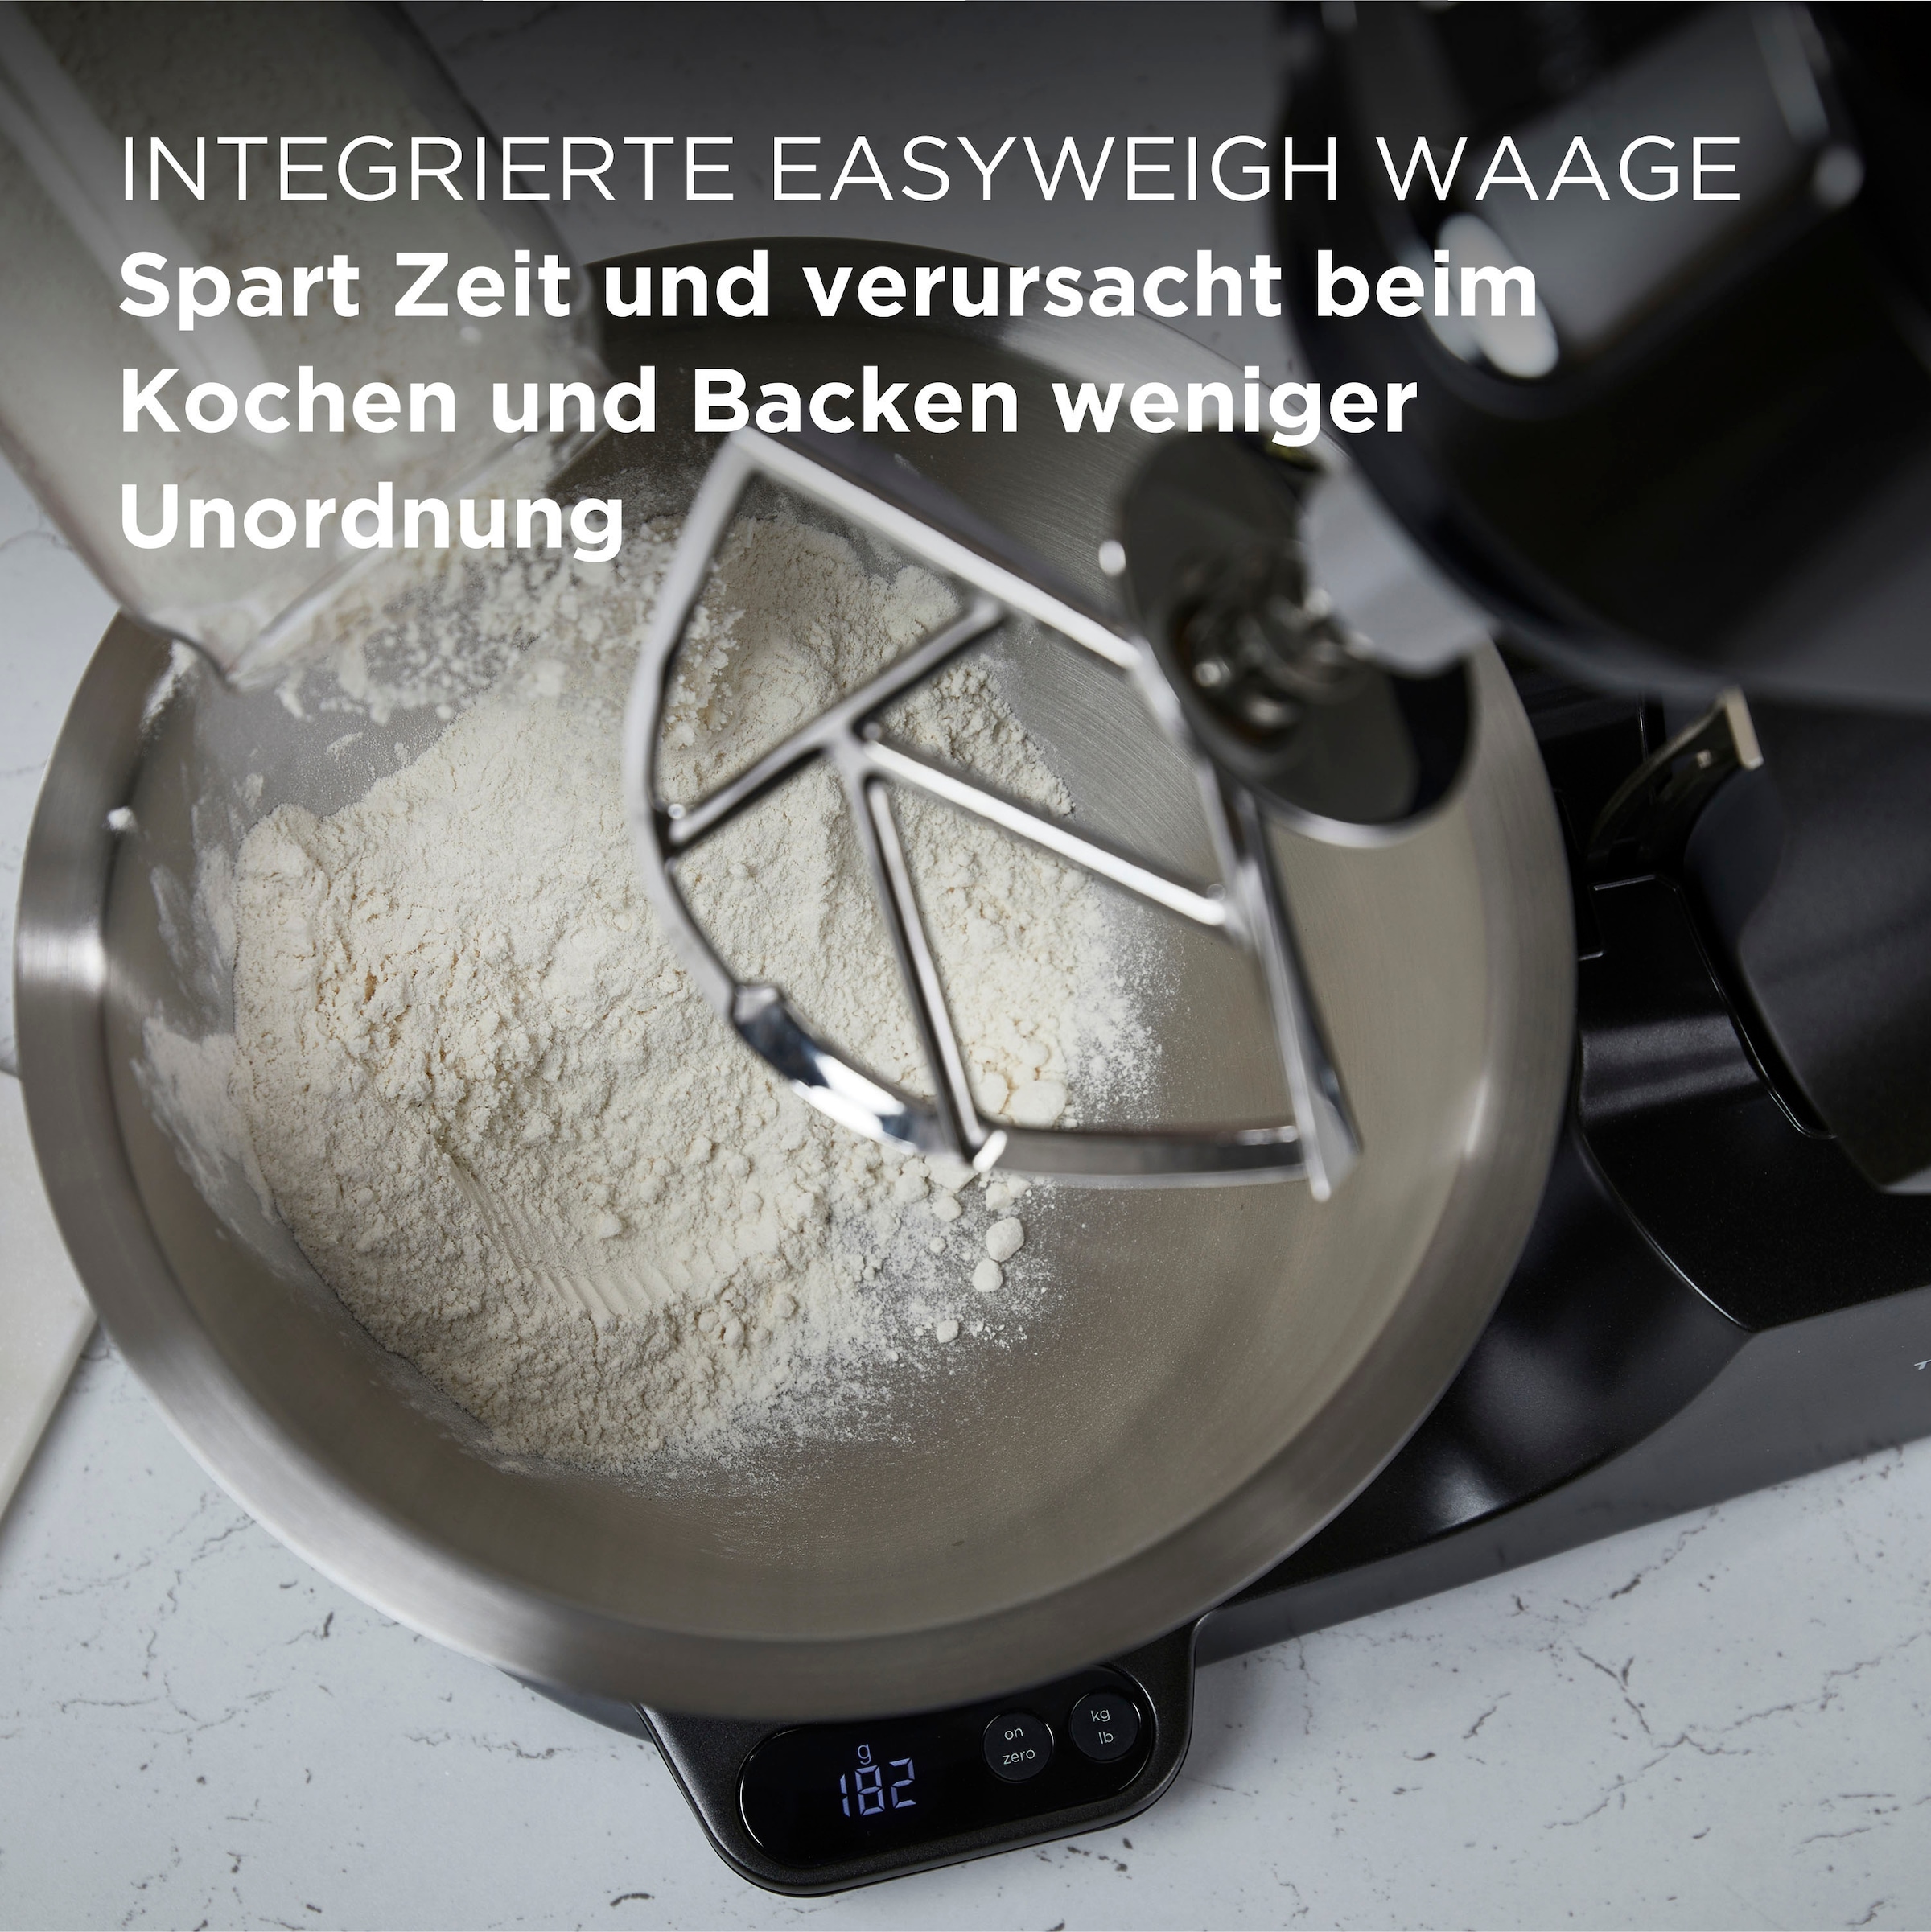 KENWOOD Küchenmaschine | Gratis: mit Baker Zubehör Chef BAUR Waage, »Titanium UVP Mixaufsatz+Schnitzelwerk 319,- + KVC85.004BK«, Wert